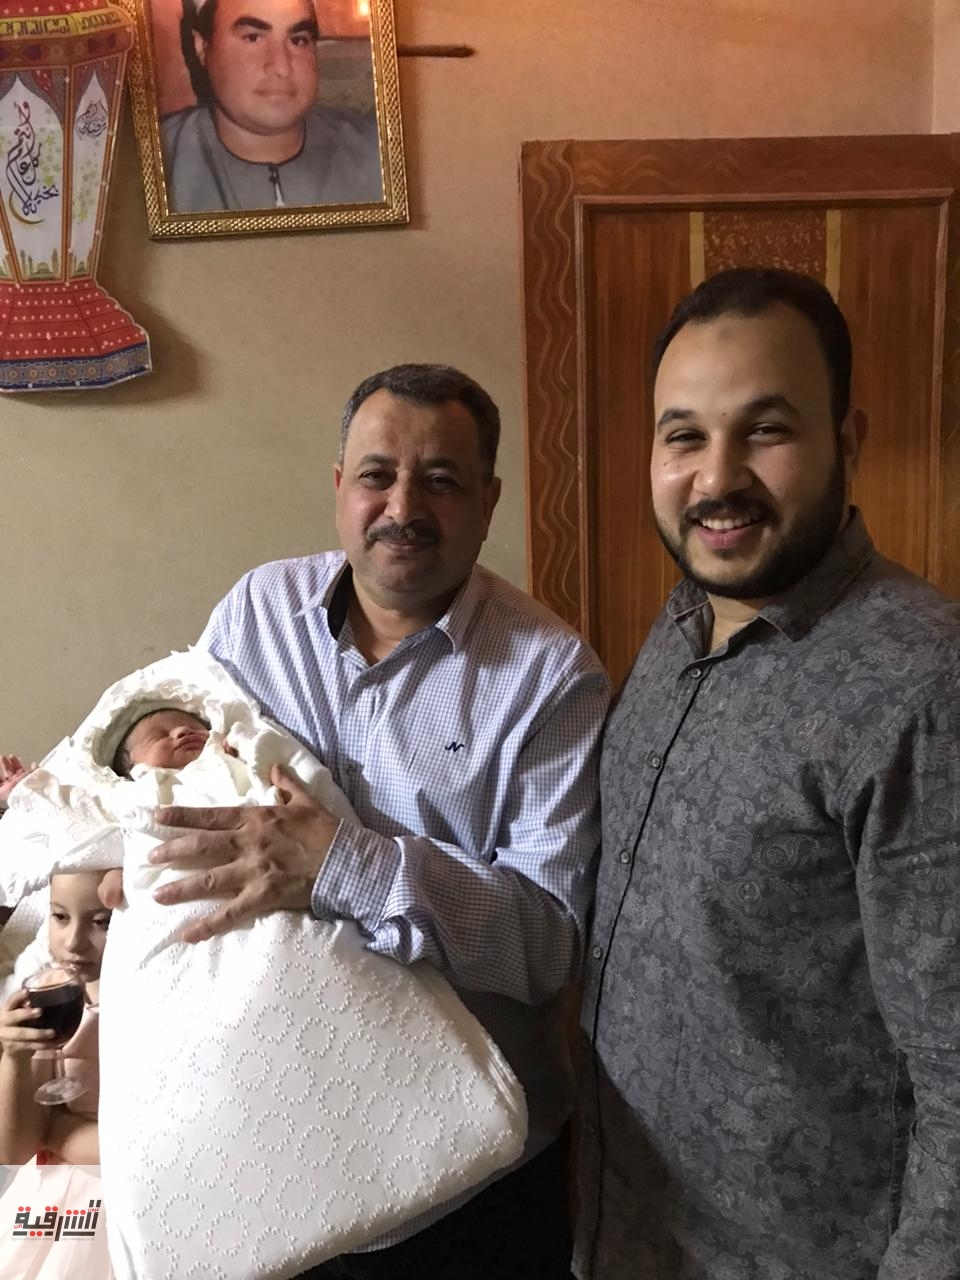 أجمل التهانى للأستاذ أحمد هنداوي والدكتور حسام العزازي بقدوم مولدتهم الجديدة فريدة